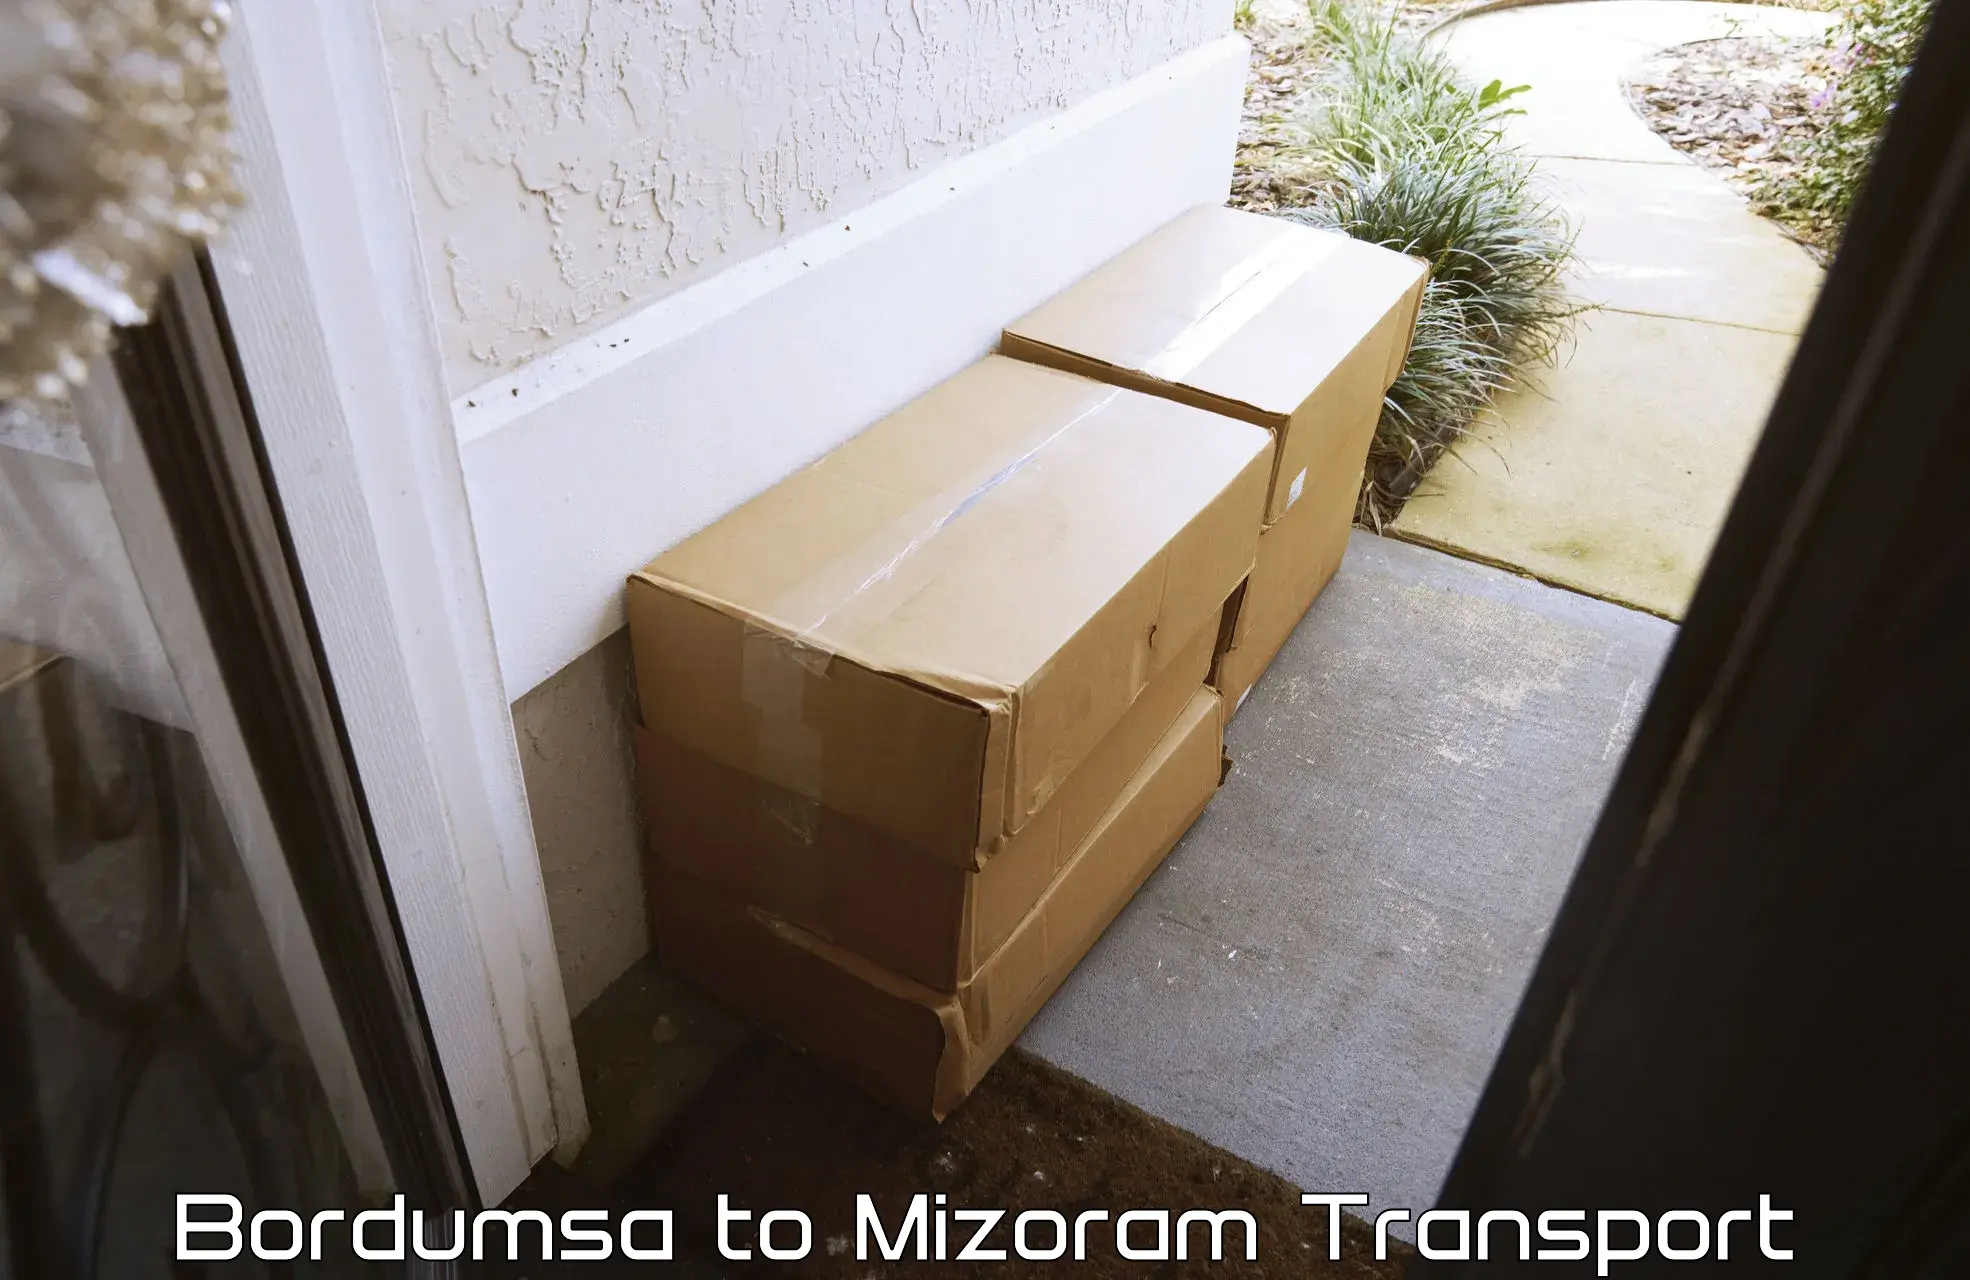 Shipping partner Bordumsa to Mizoram